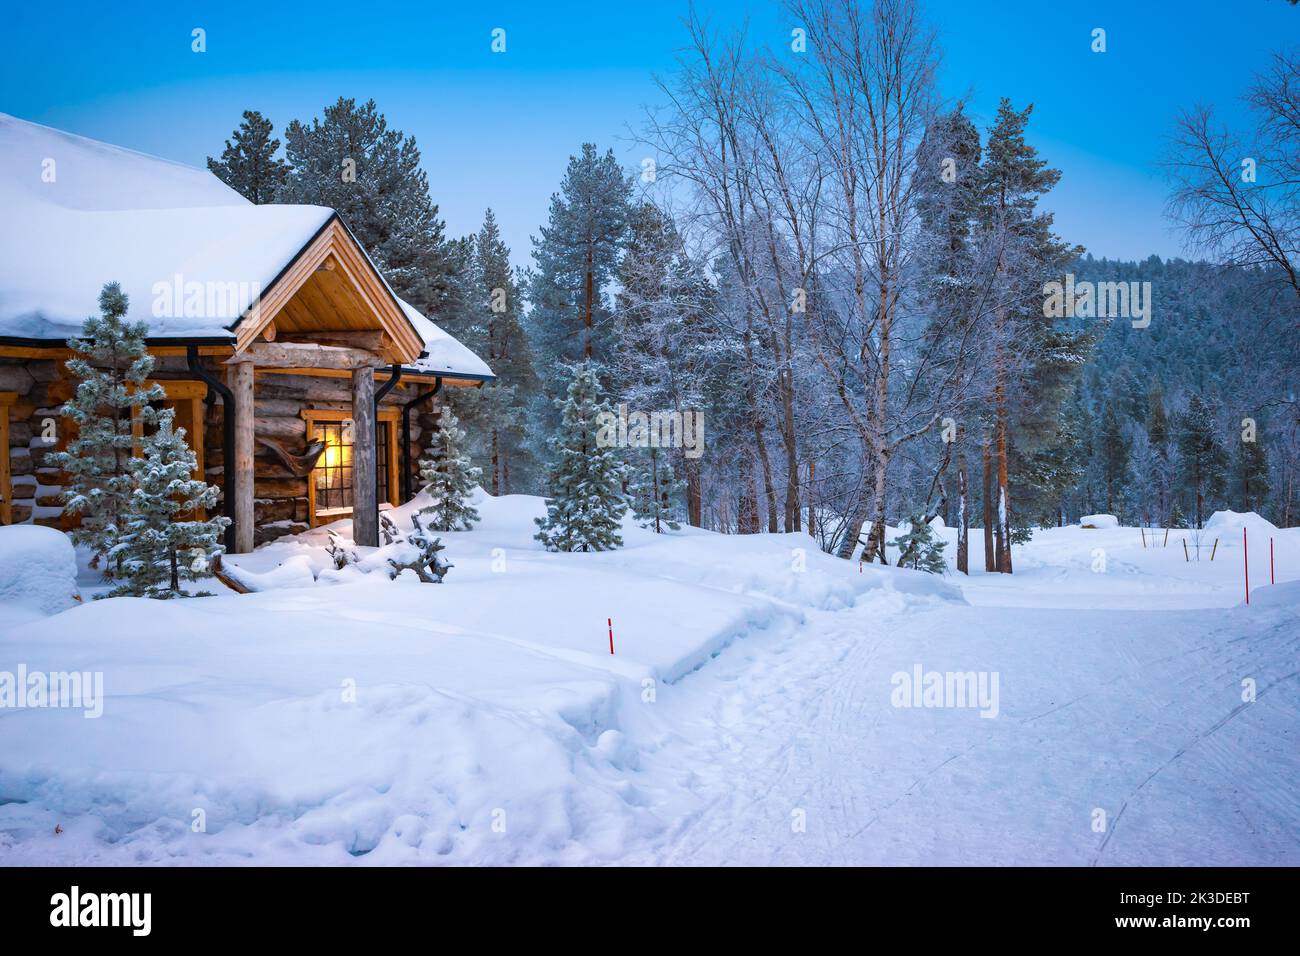 Cabaña de madera en la nieve. Laponia, Finlandia, Escandinavia. Foto de stock